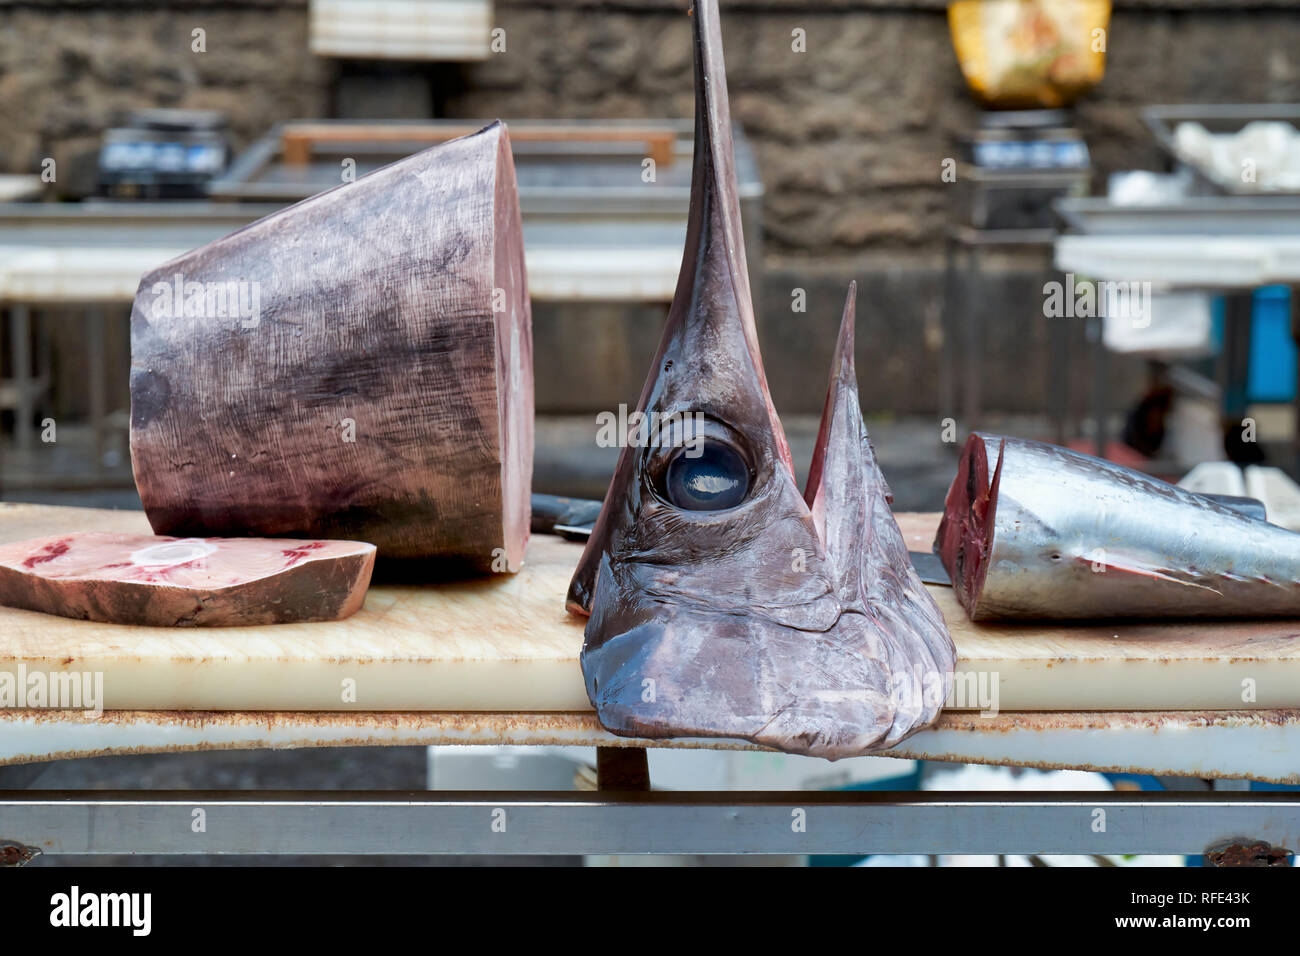 Piscaria, strada mercato giornaliero in Catania Sicilia Italia. Pesce fresco, carne e verdure Foto Stock